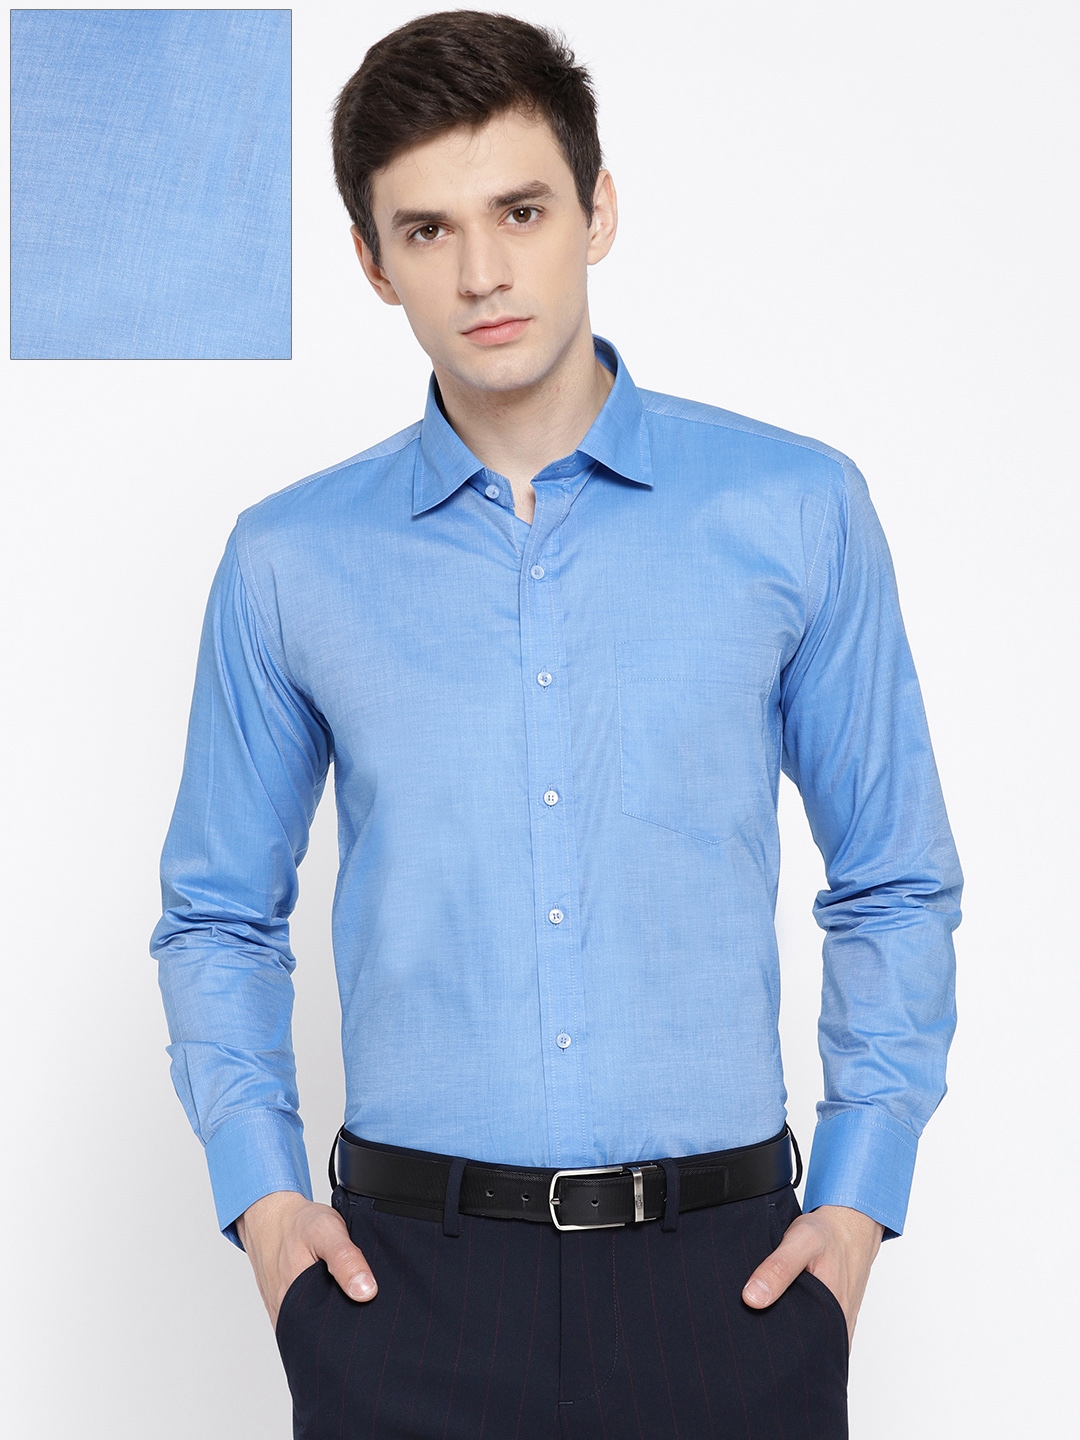 Buy DENNISON Men Blue Comfort Fit Solid Formal Shirt - Shirts for Men ...